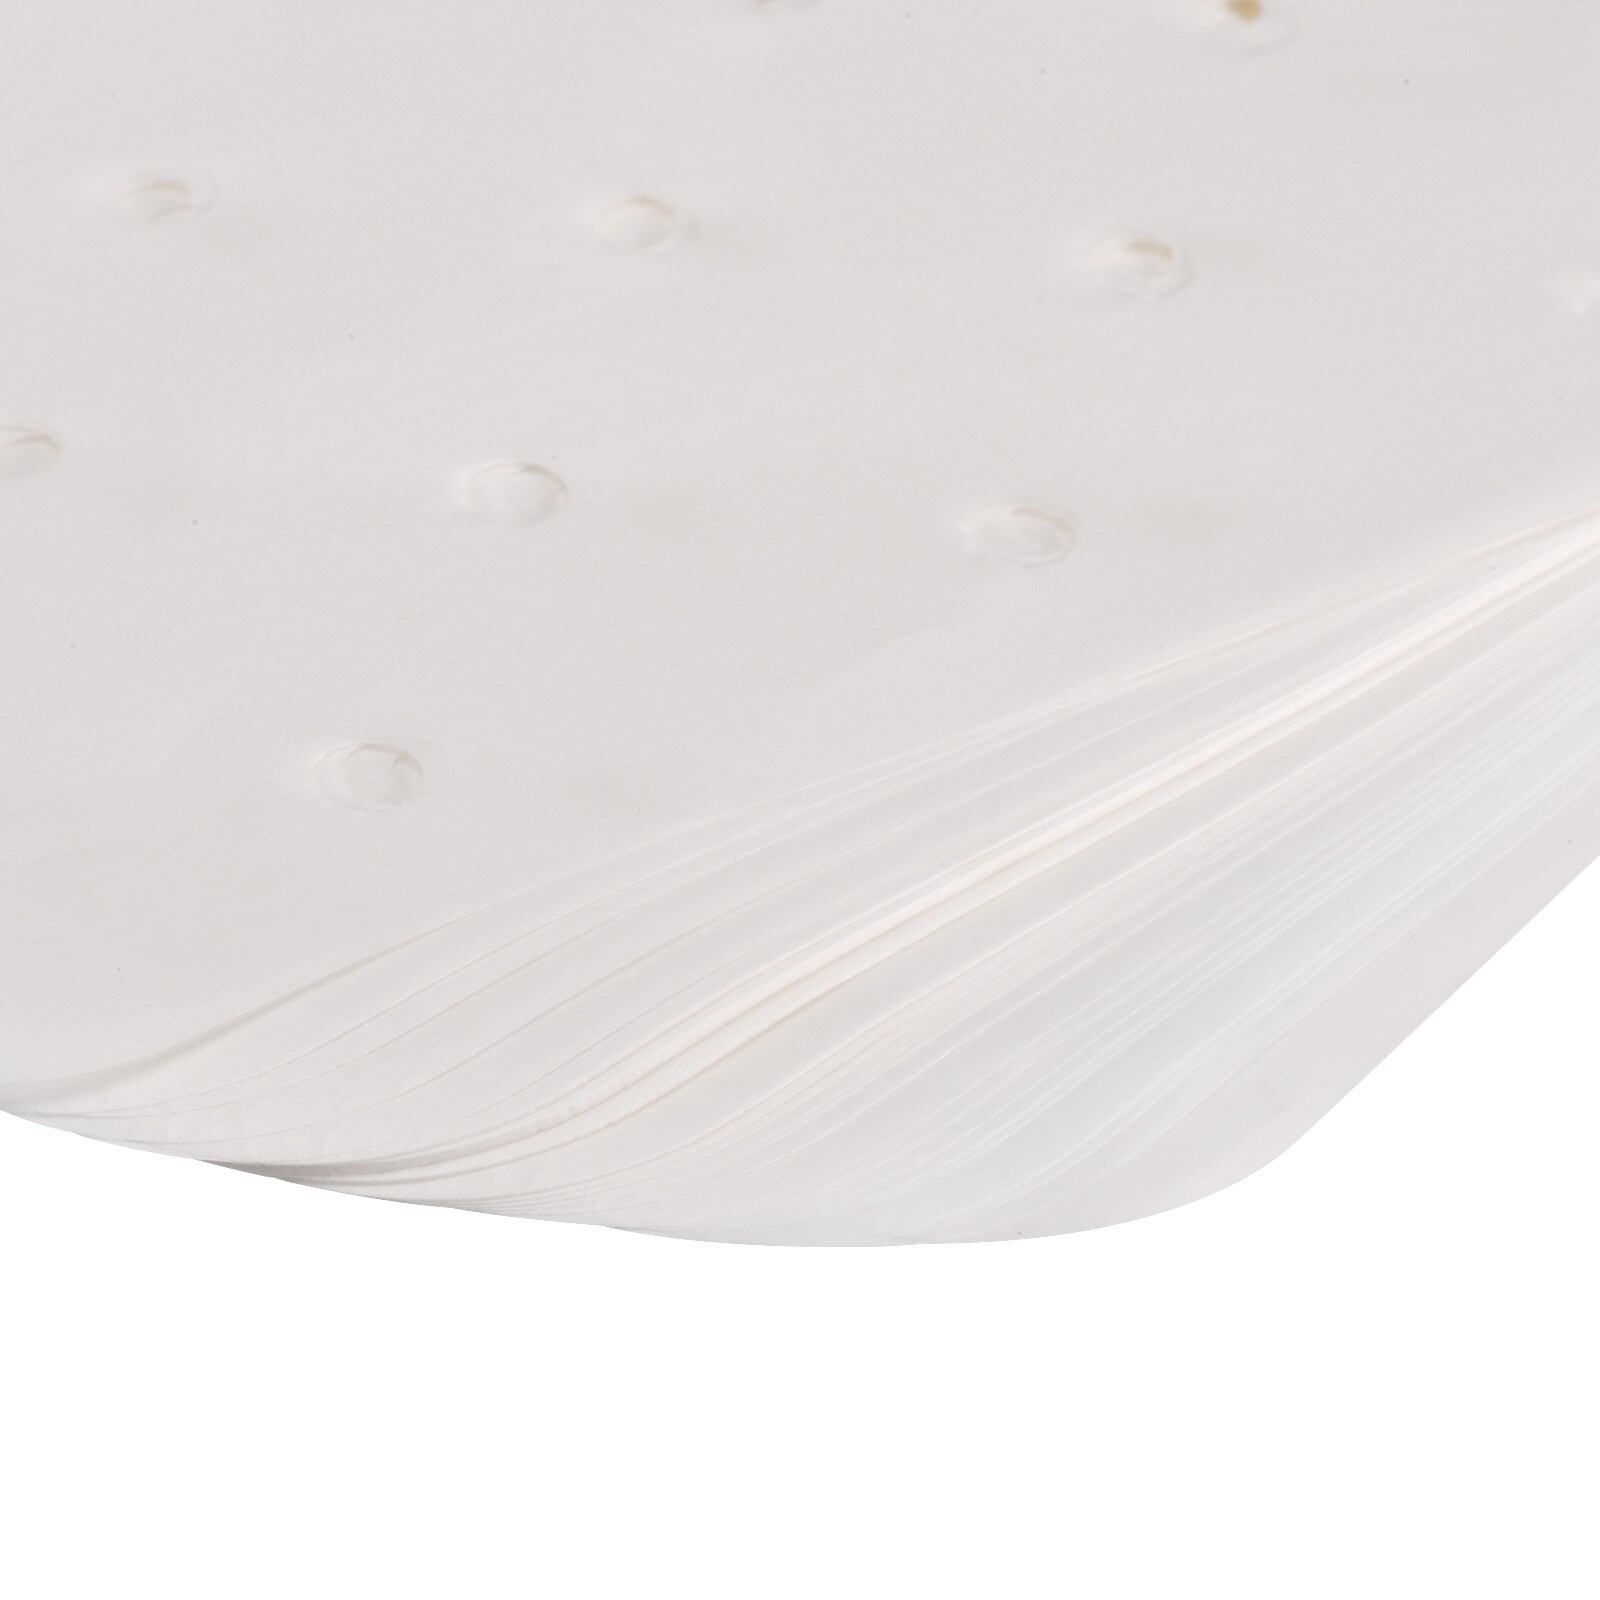 Air Fryer Parchment Paper Liners, 50pcs Non Stick Baking Paper,White - White